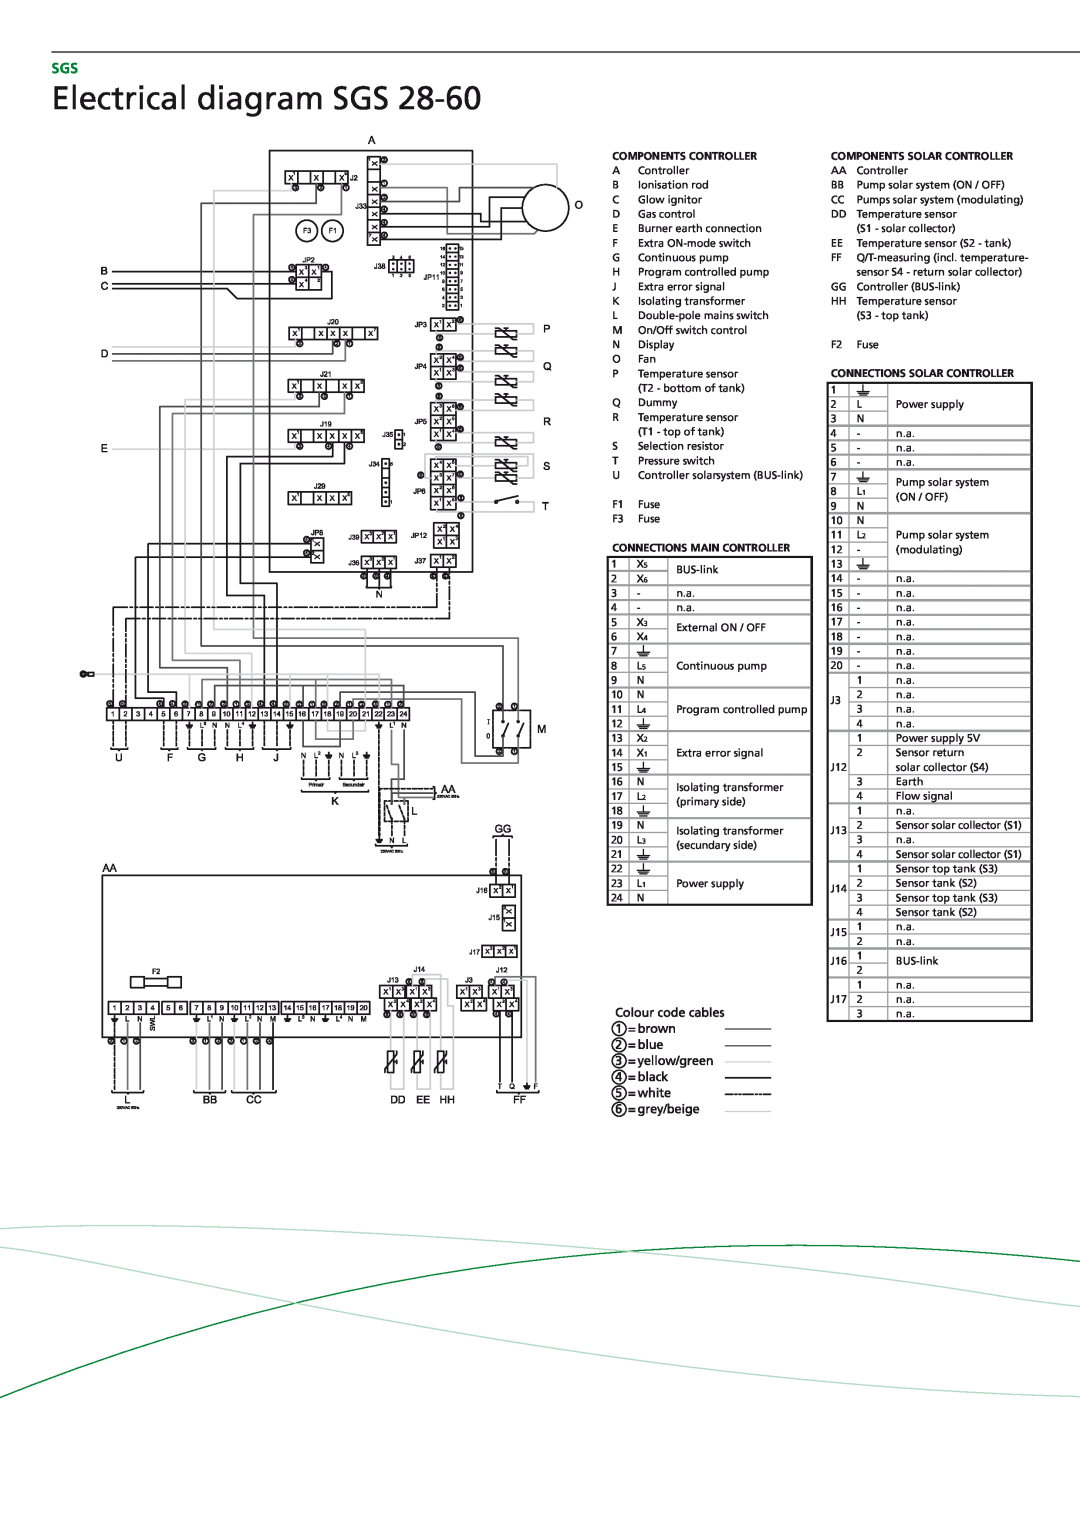 A.O. Smith SGS - 30, SGS - 60, SGS - 50, SGS - 28 Electrical diagram SGS, Components Controller, Connections main controller 